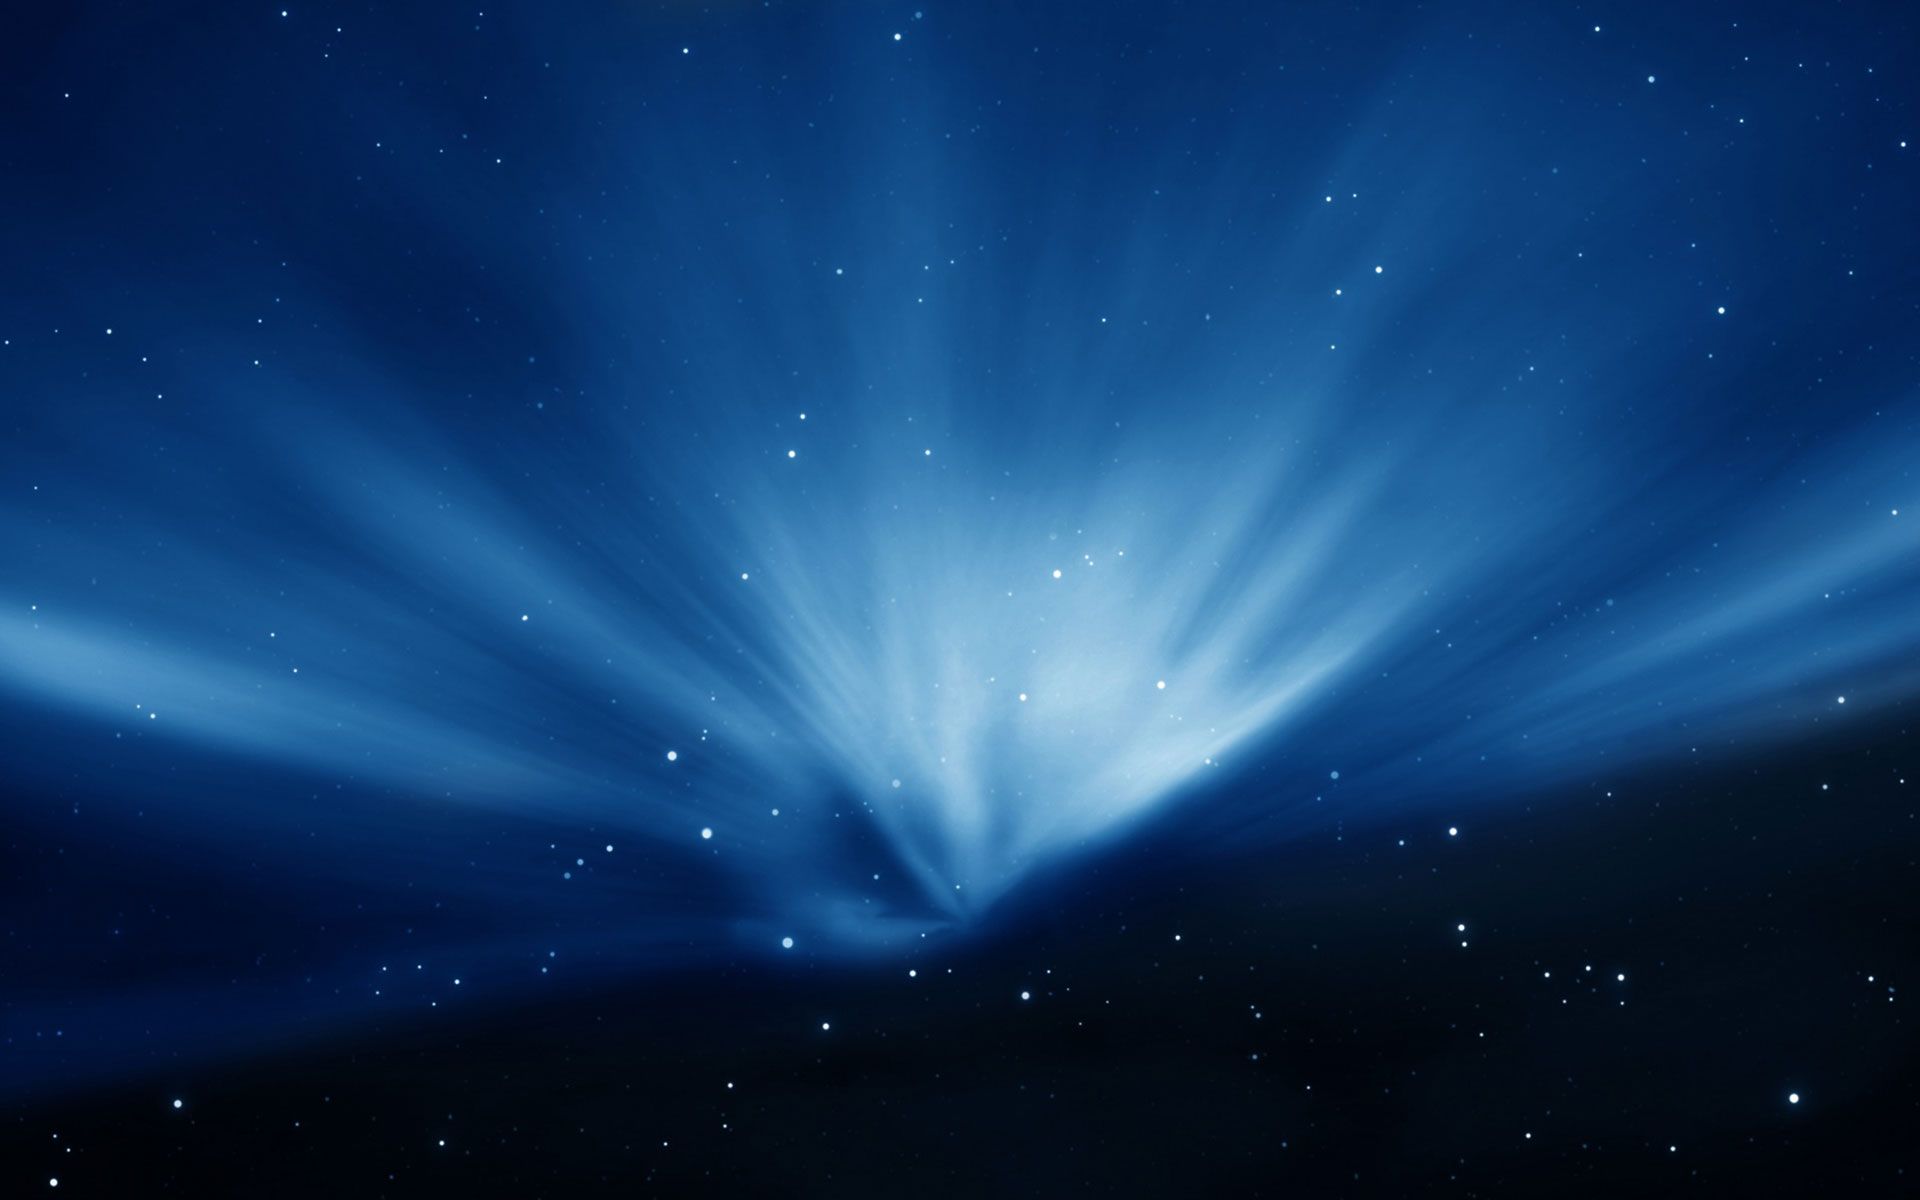 عکس انتزاعی آسمان در شب پر ستاره زیبا با تم کهکشانی آبی 2023